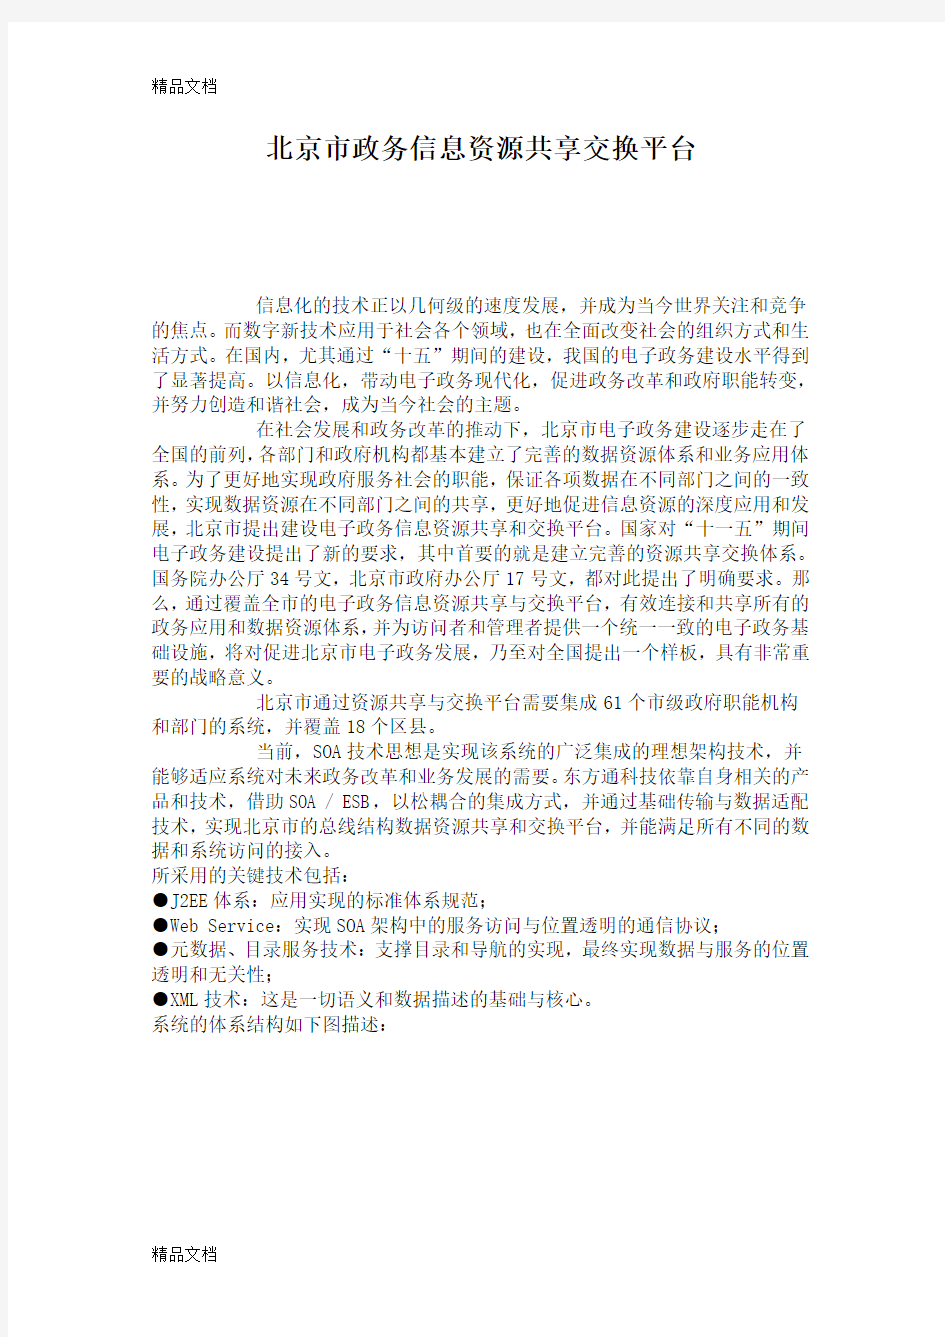 (整理)北京市政务信息资源共享交换平台.